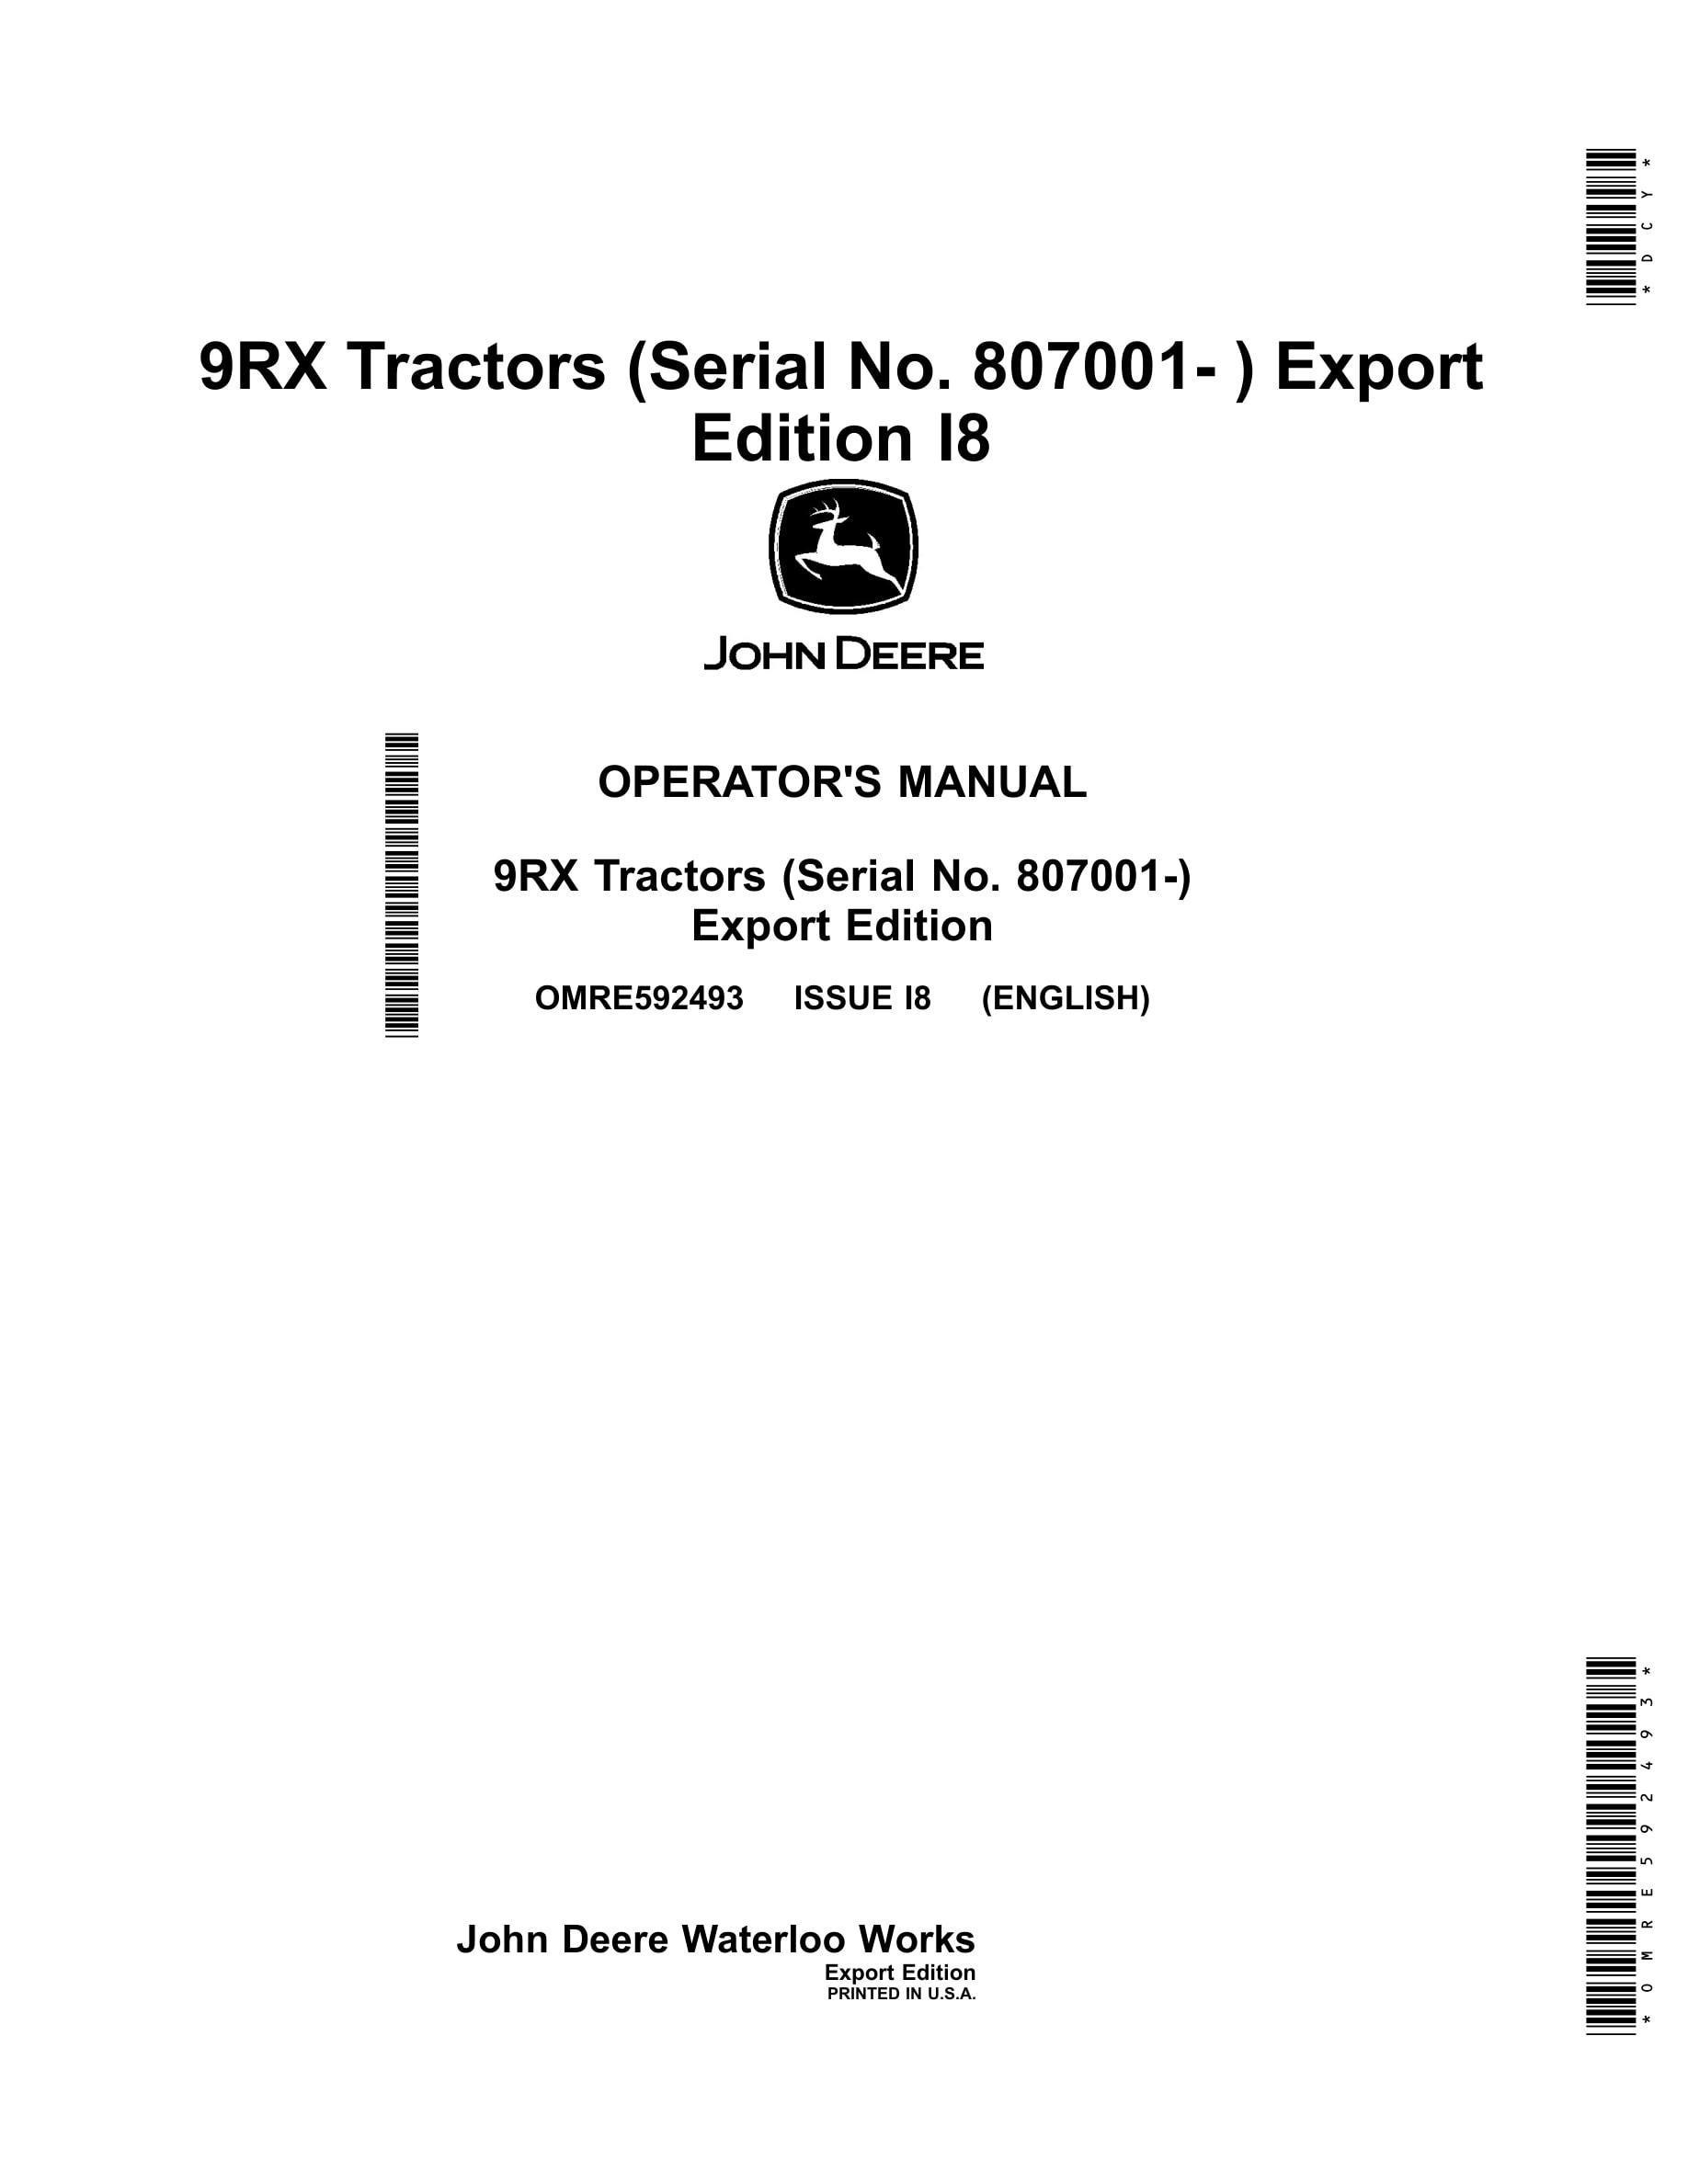 John Deere 9rx Tractors Operator Manuals OMRE592493-1